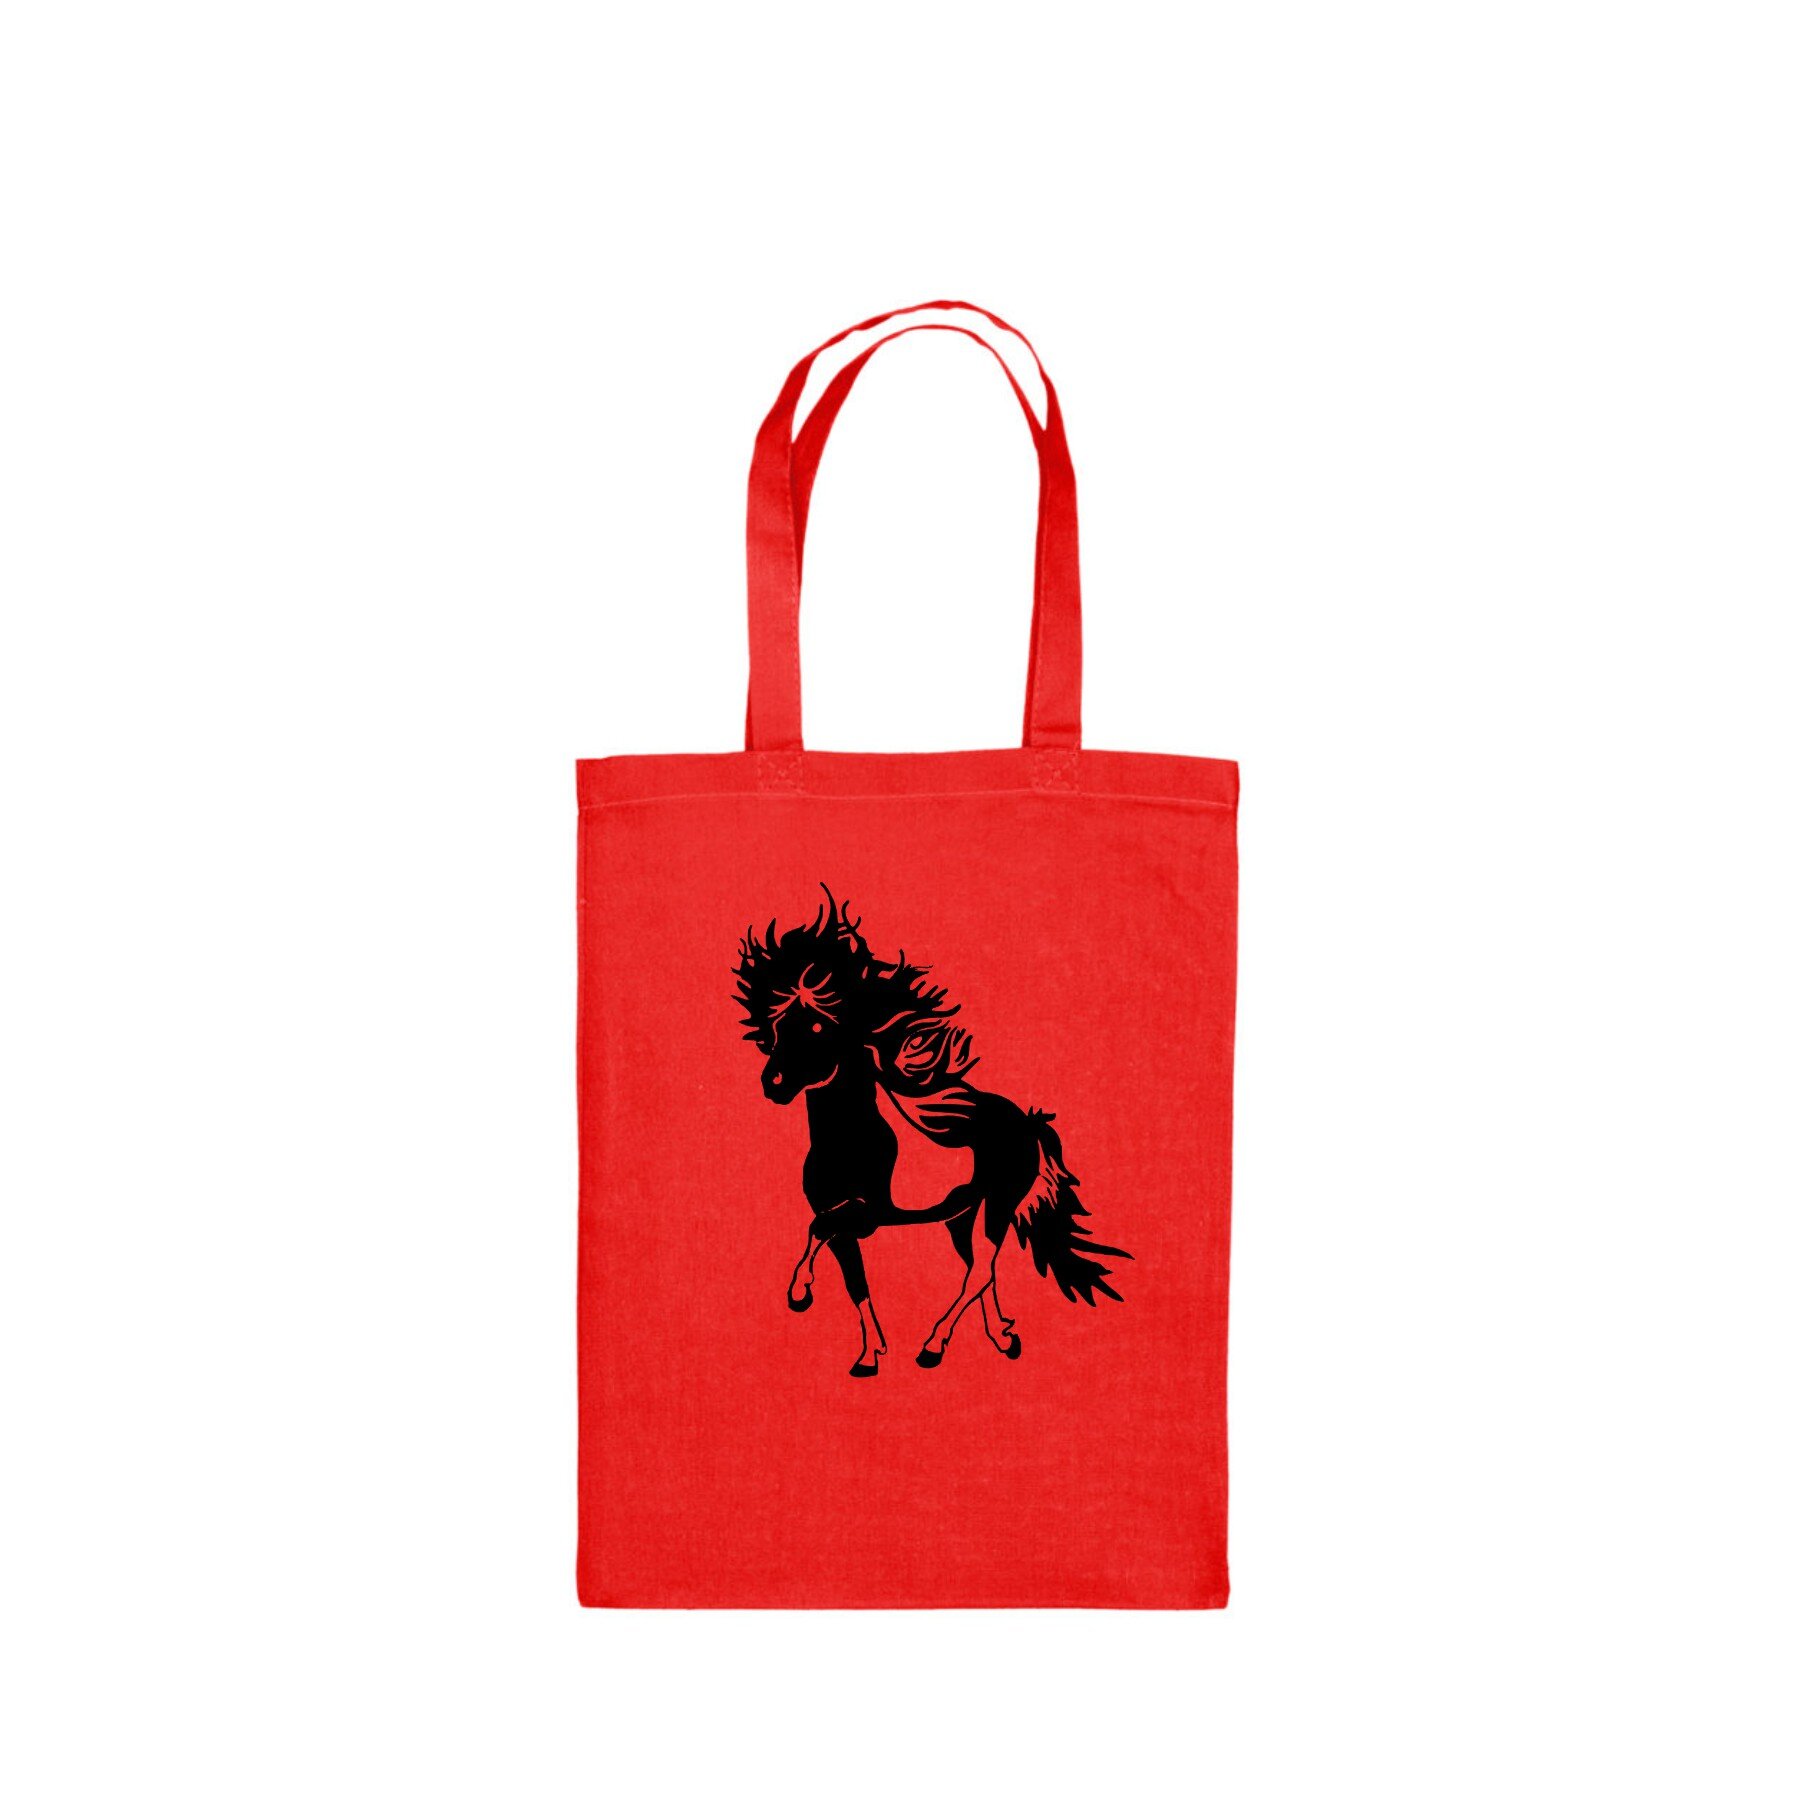 Rode tas met bonte paard